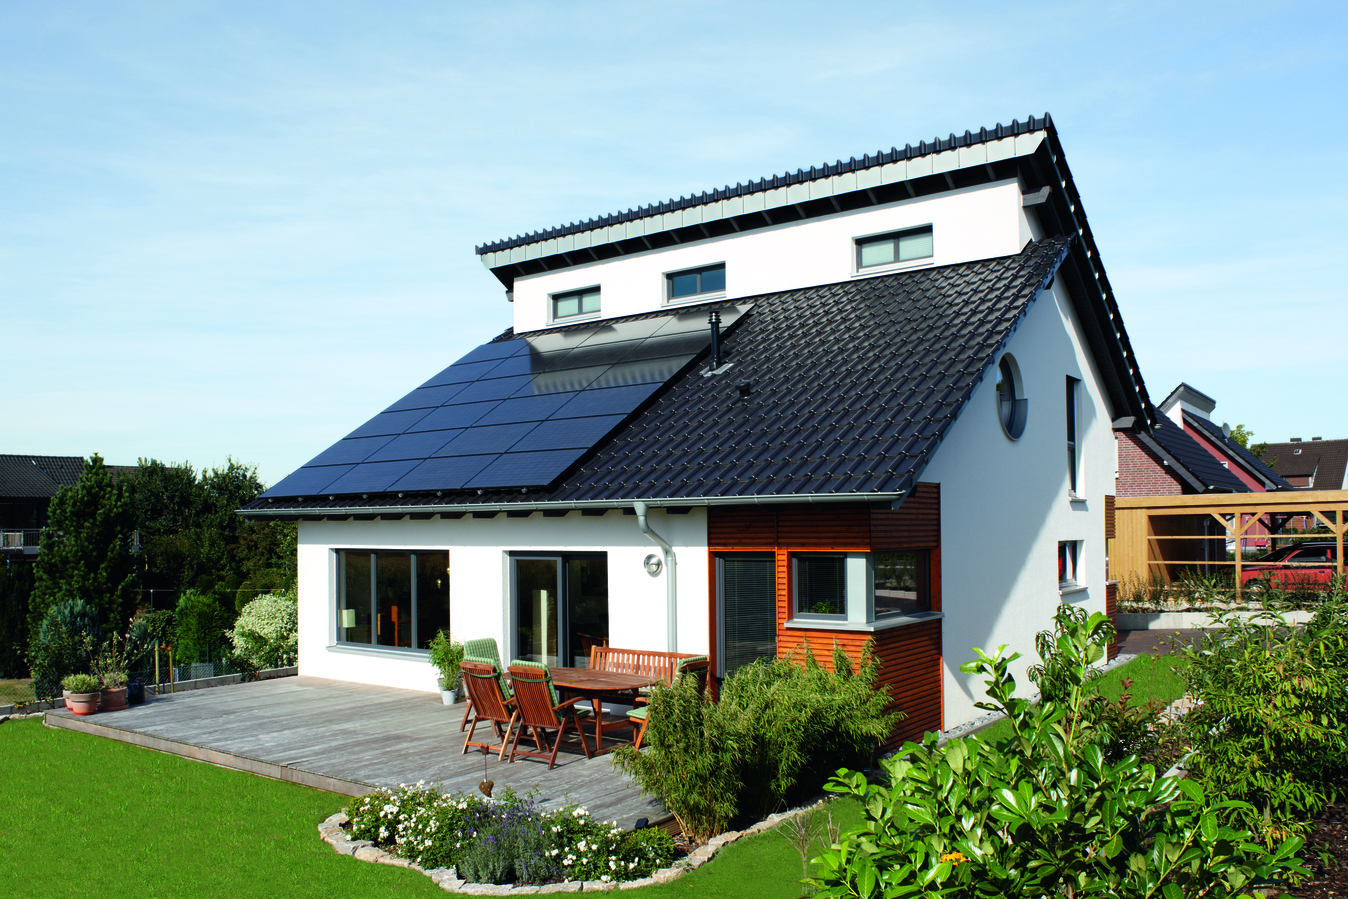 Vytápění rodinného domu krbem se dá kombinovat s fotovoltaikou. 